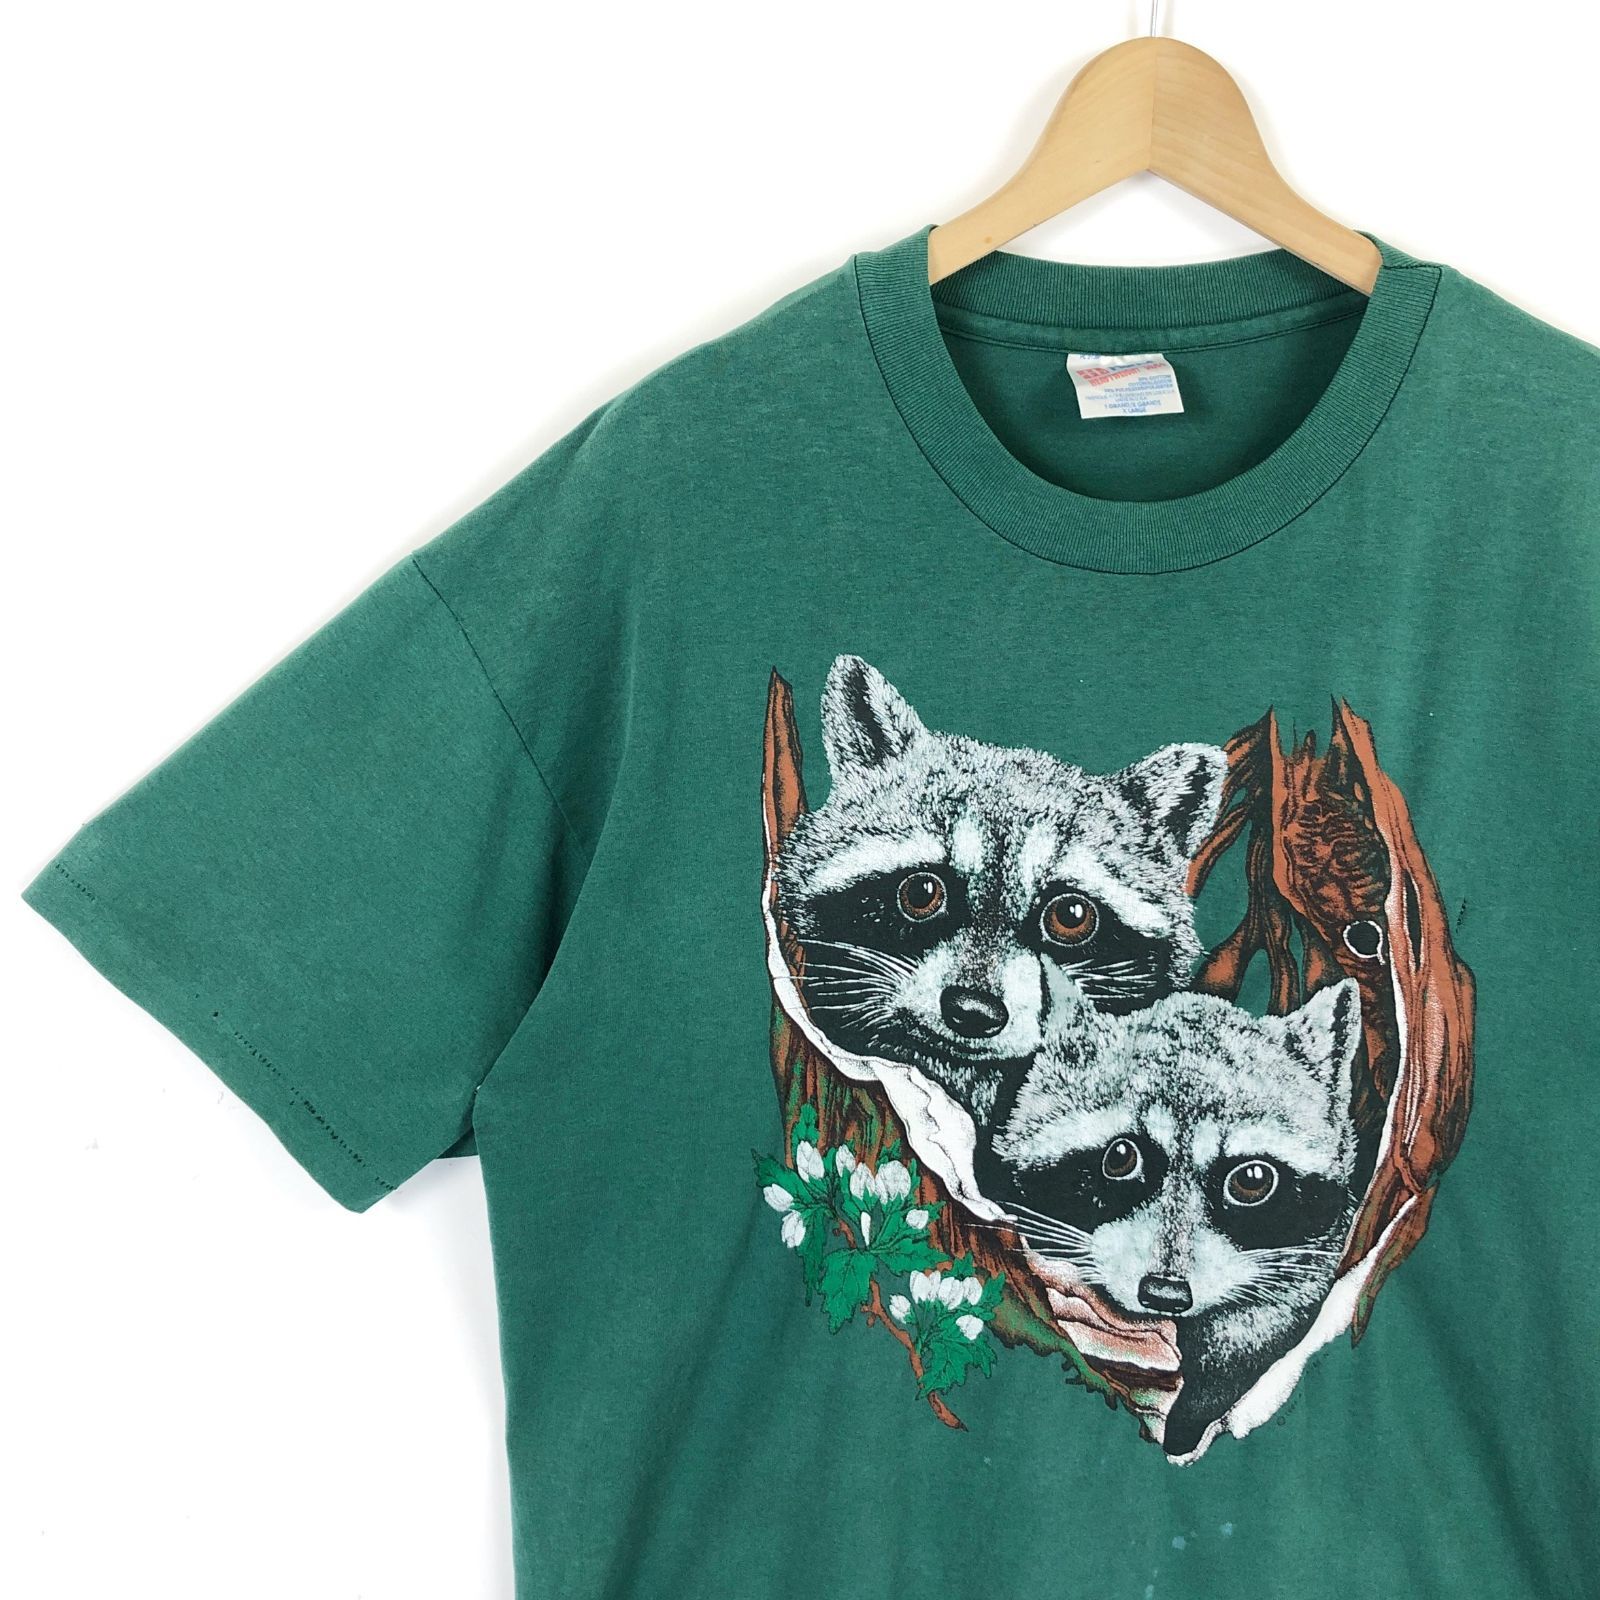 Tシャツ アニマル柄 アライグマ 80年代 古着 ヴィンテージ 緑 XL